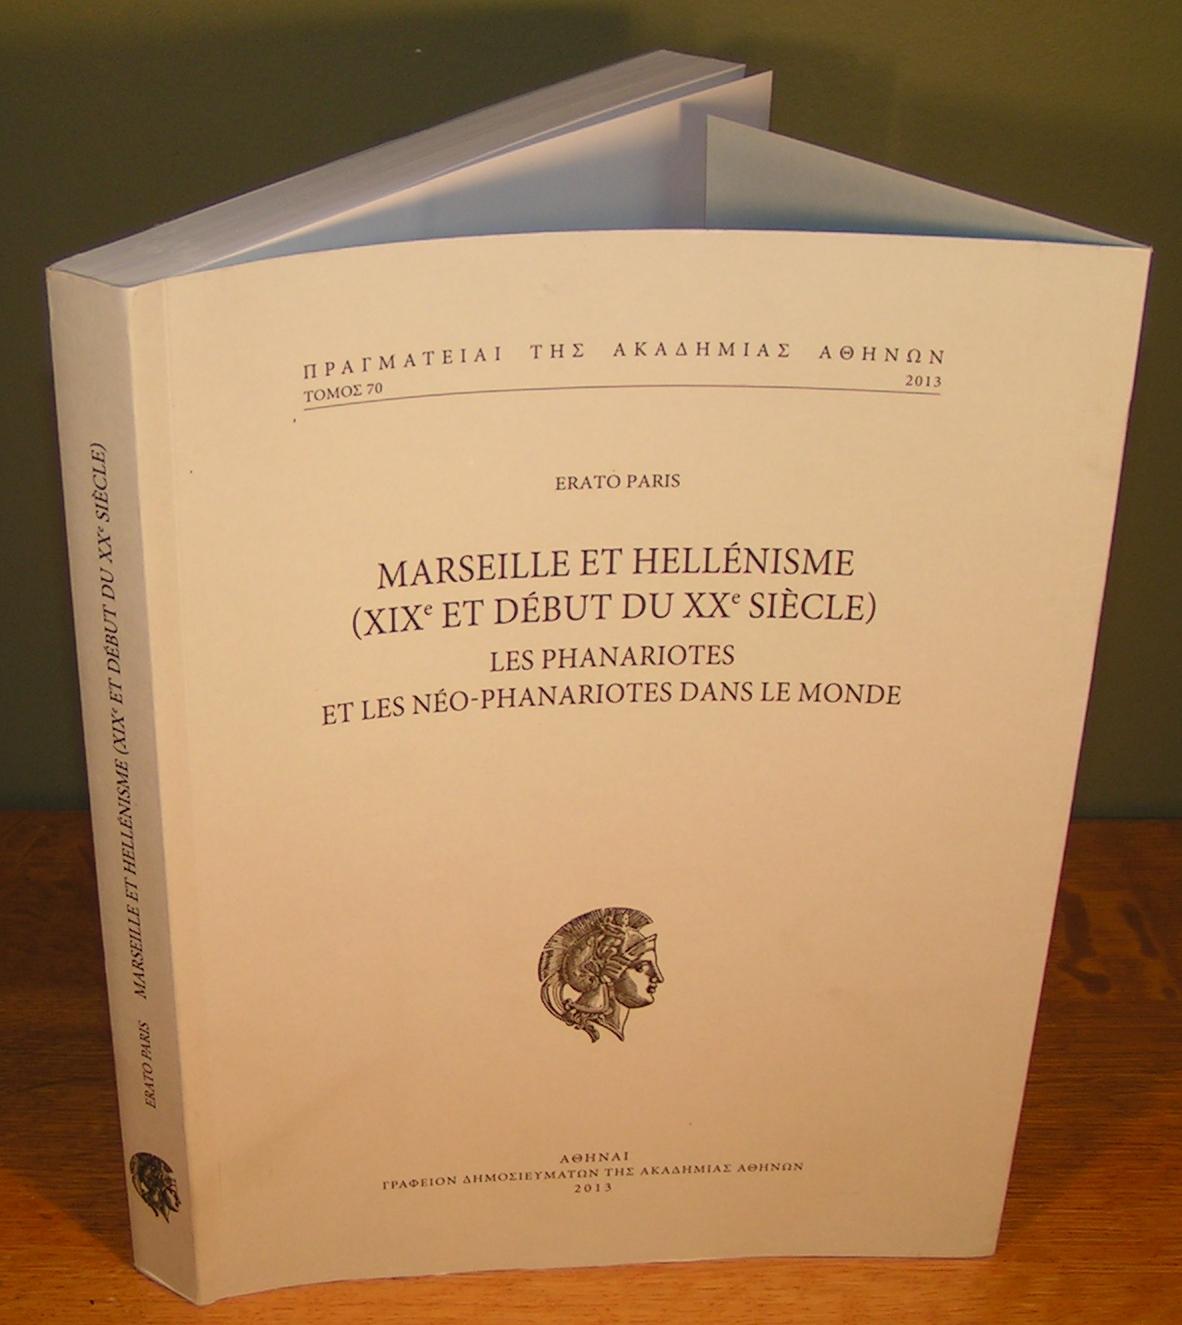 Marseille et Hellenisme (XIXe et debut du XXe siecle) : les phanariotes et les neo- phanariotes dans le monde - Erato Paris; Emmanuel Le Roy Ladurie (Preface)